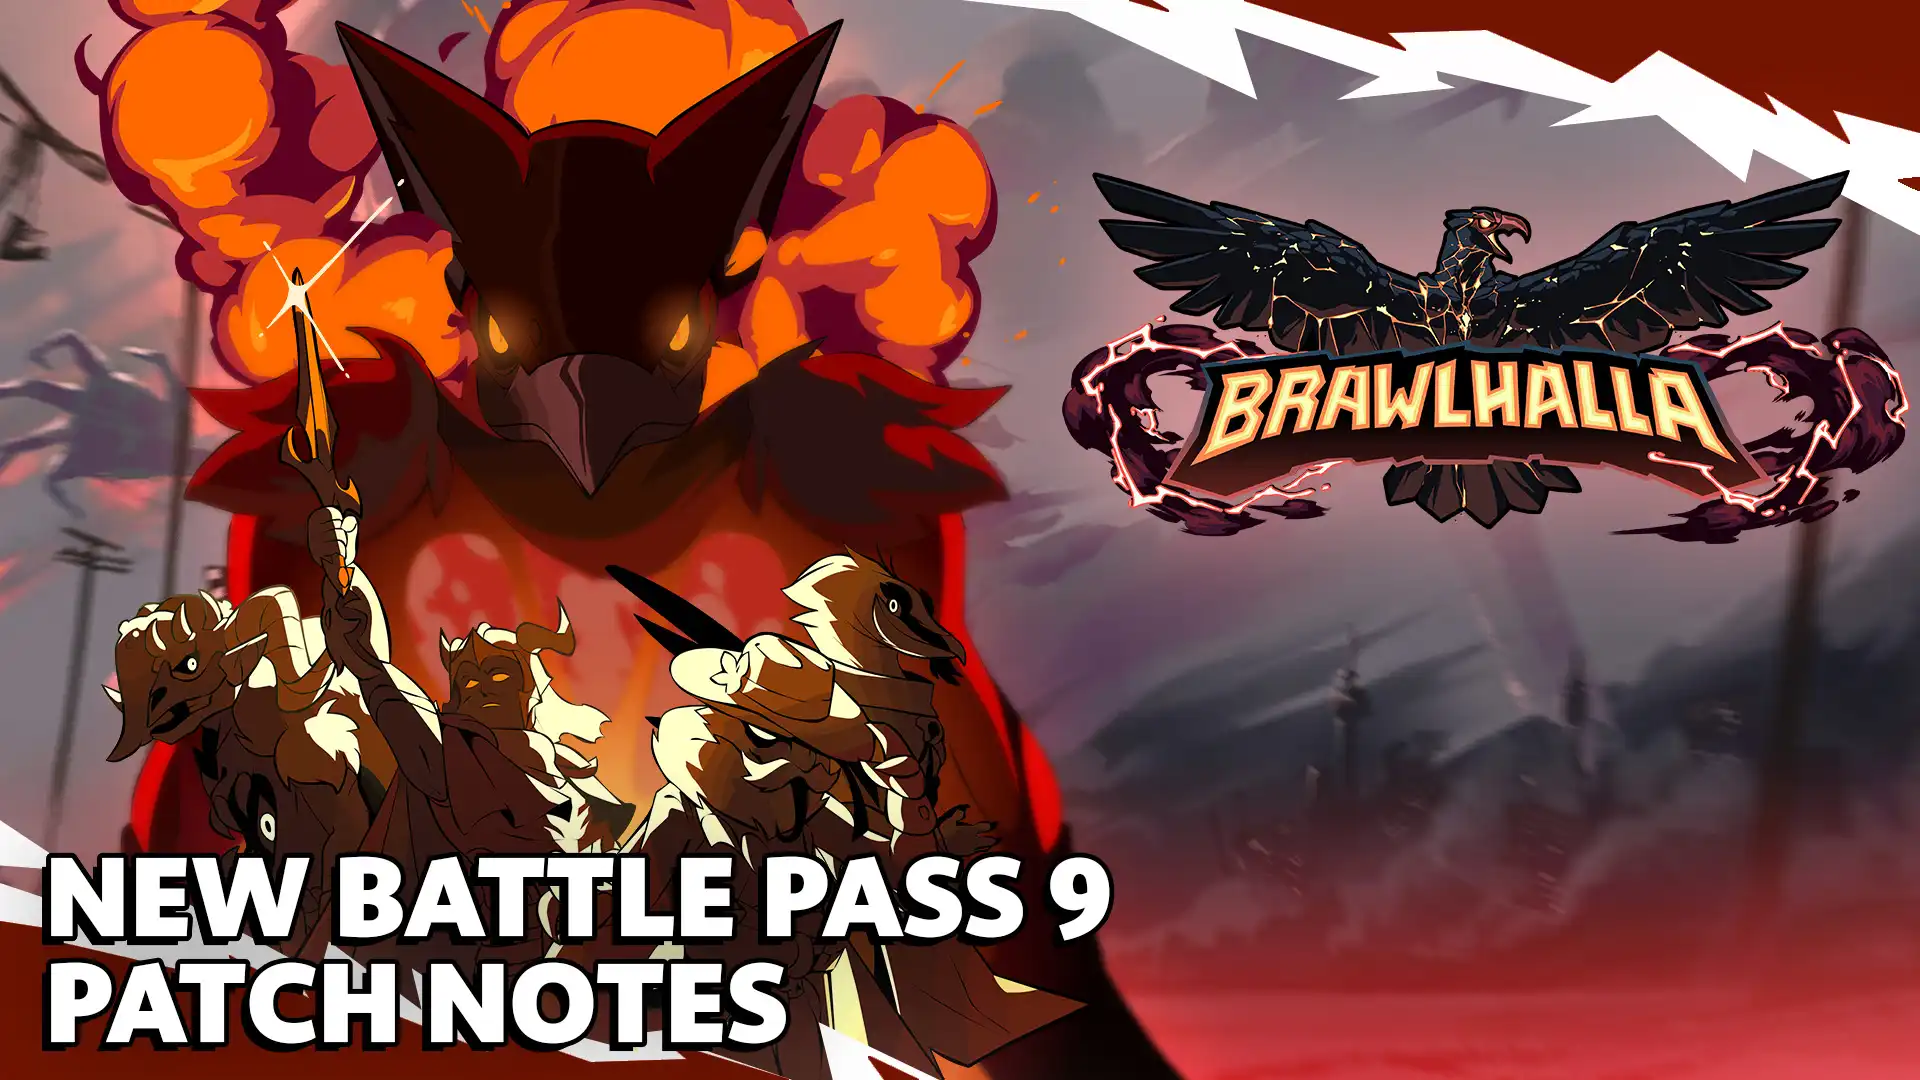 Битвенная обложка Brawlhalla с четырьмя апокалиптическими воинами и знаком Battle Pass 9.